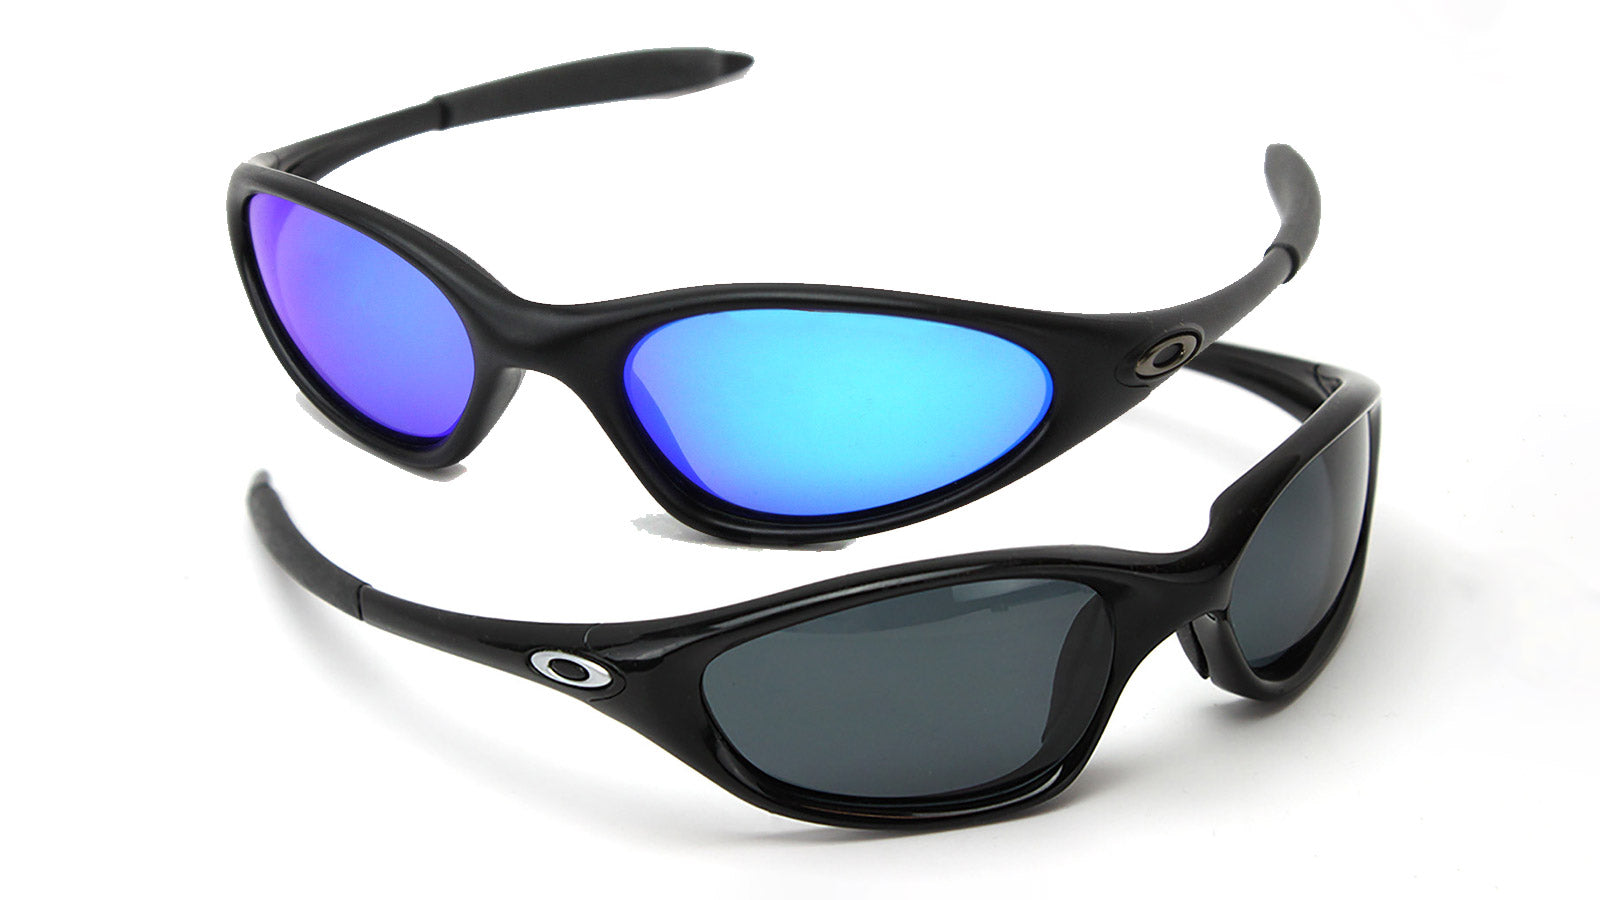 Oakley Minute 1.0 and Oakley Twenty XX sunglasses